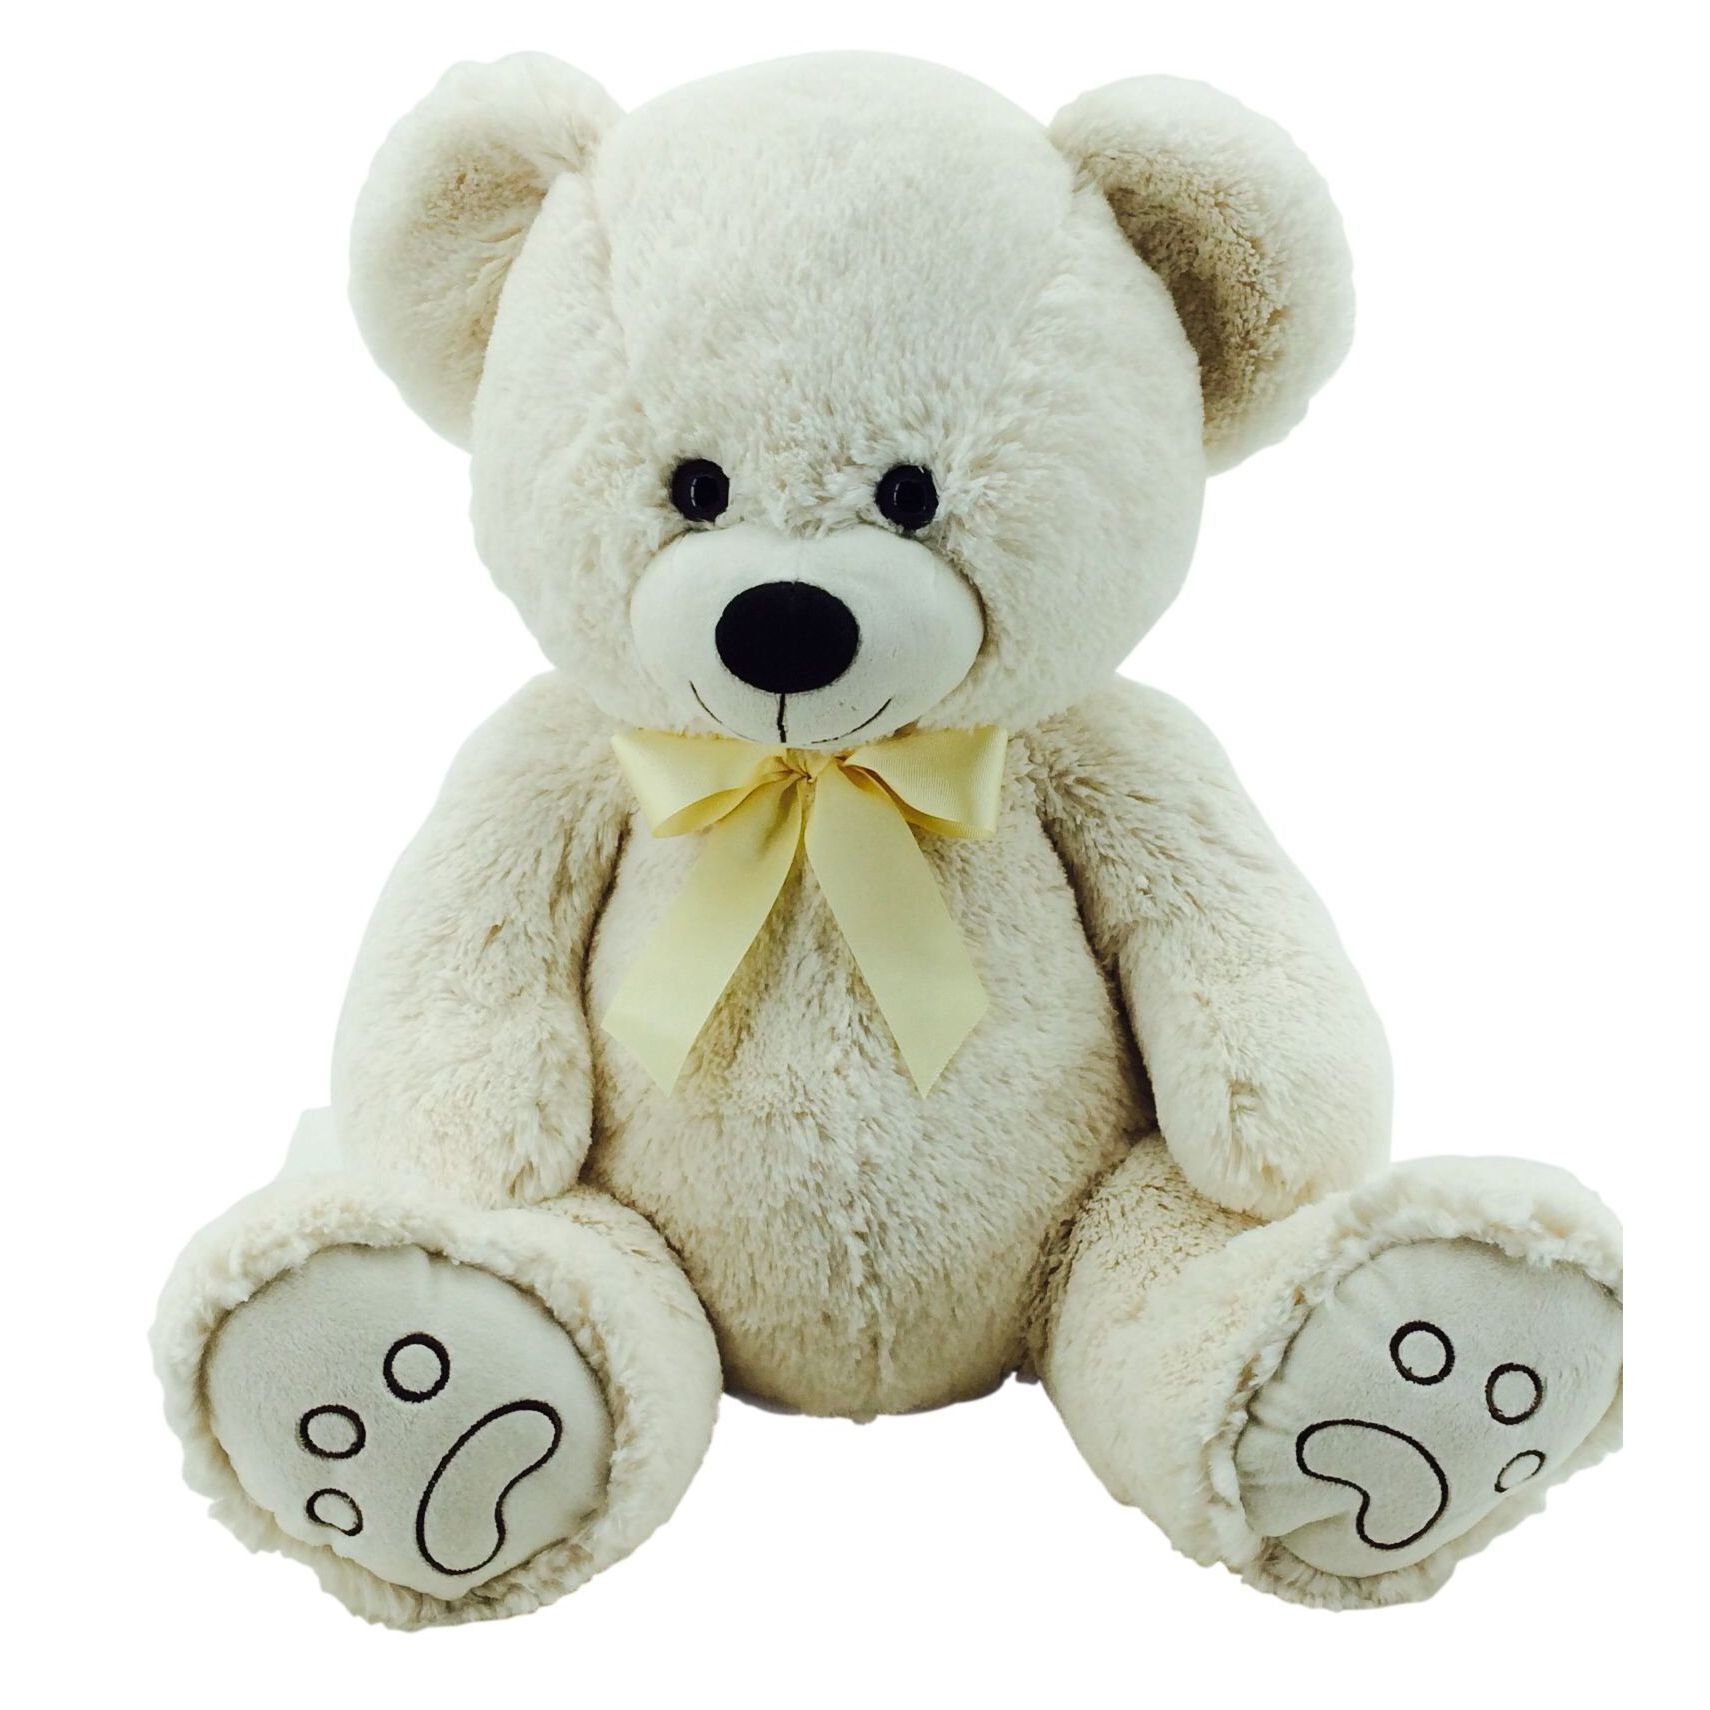 Sweety-Toys 5727 Riesen Teddy Bär Teddybär Plüschbär mit Schleife beige ca. 70cm supersüss Supersoft